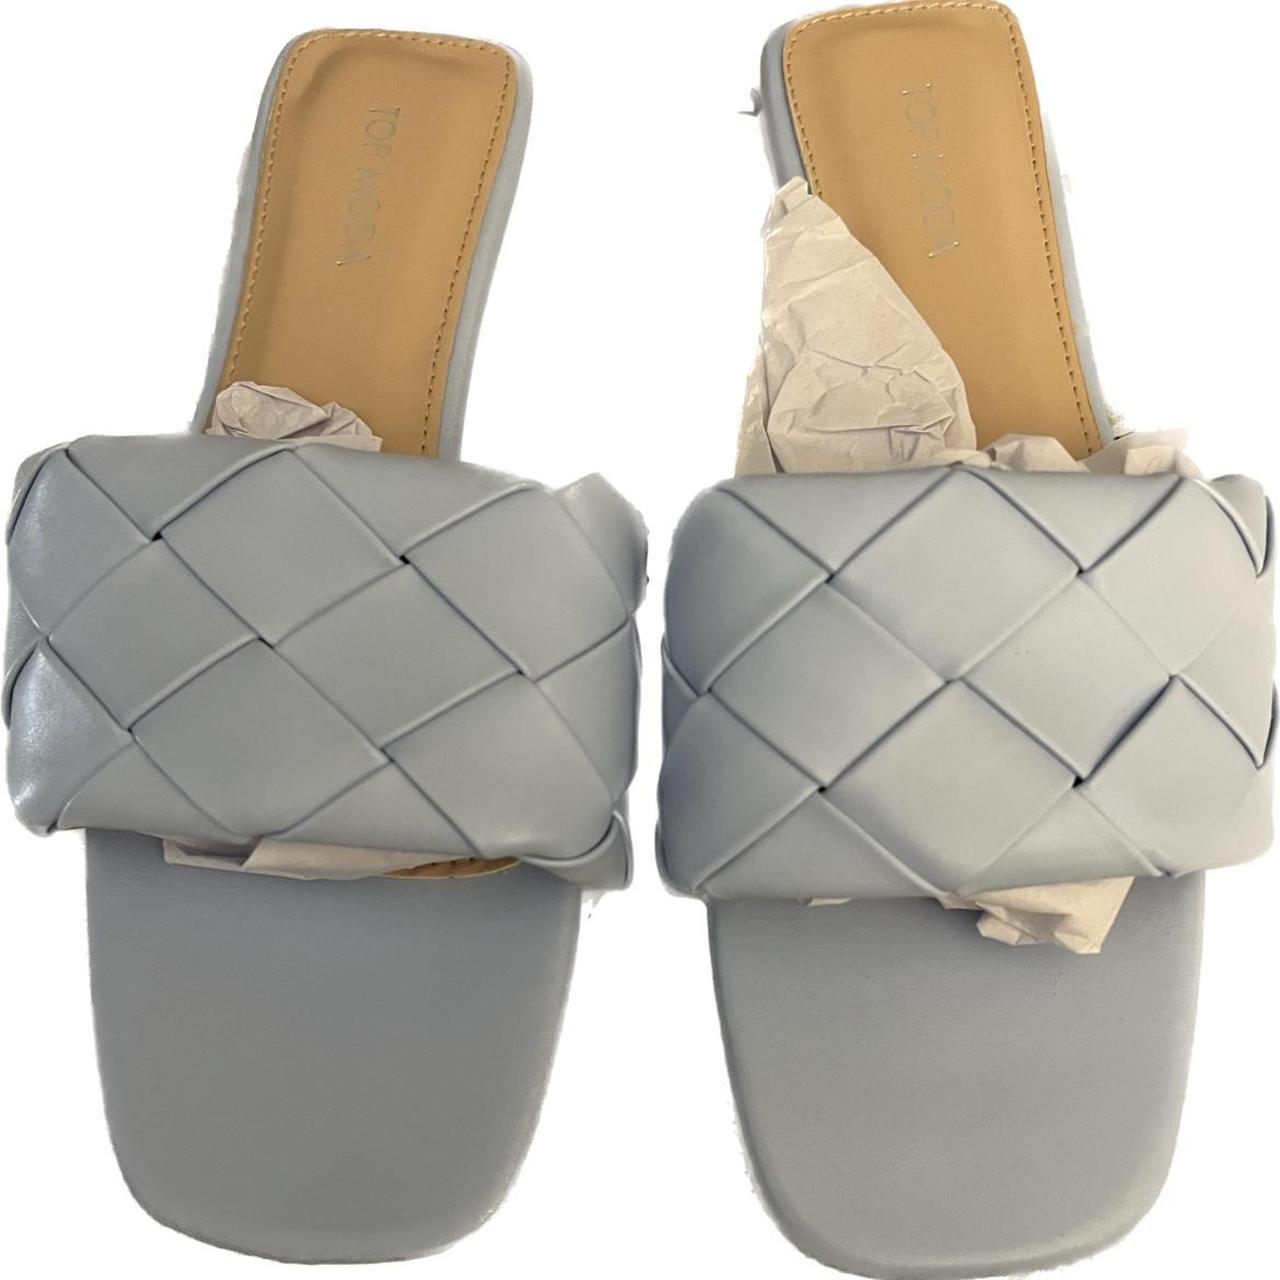 Brand new light blue sandals. - Depop